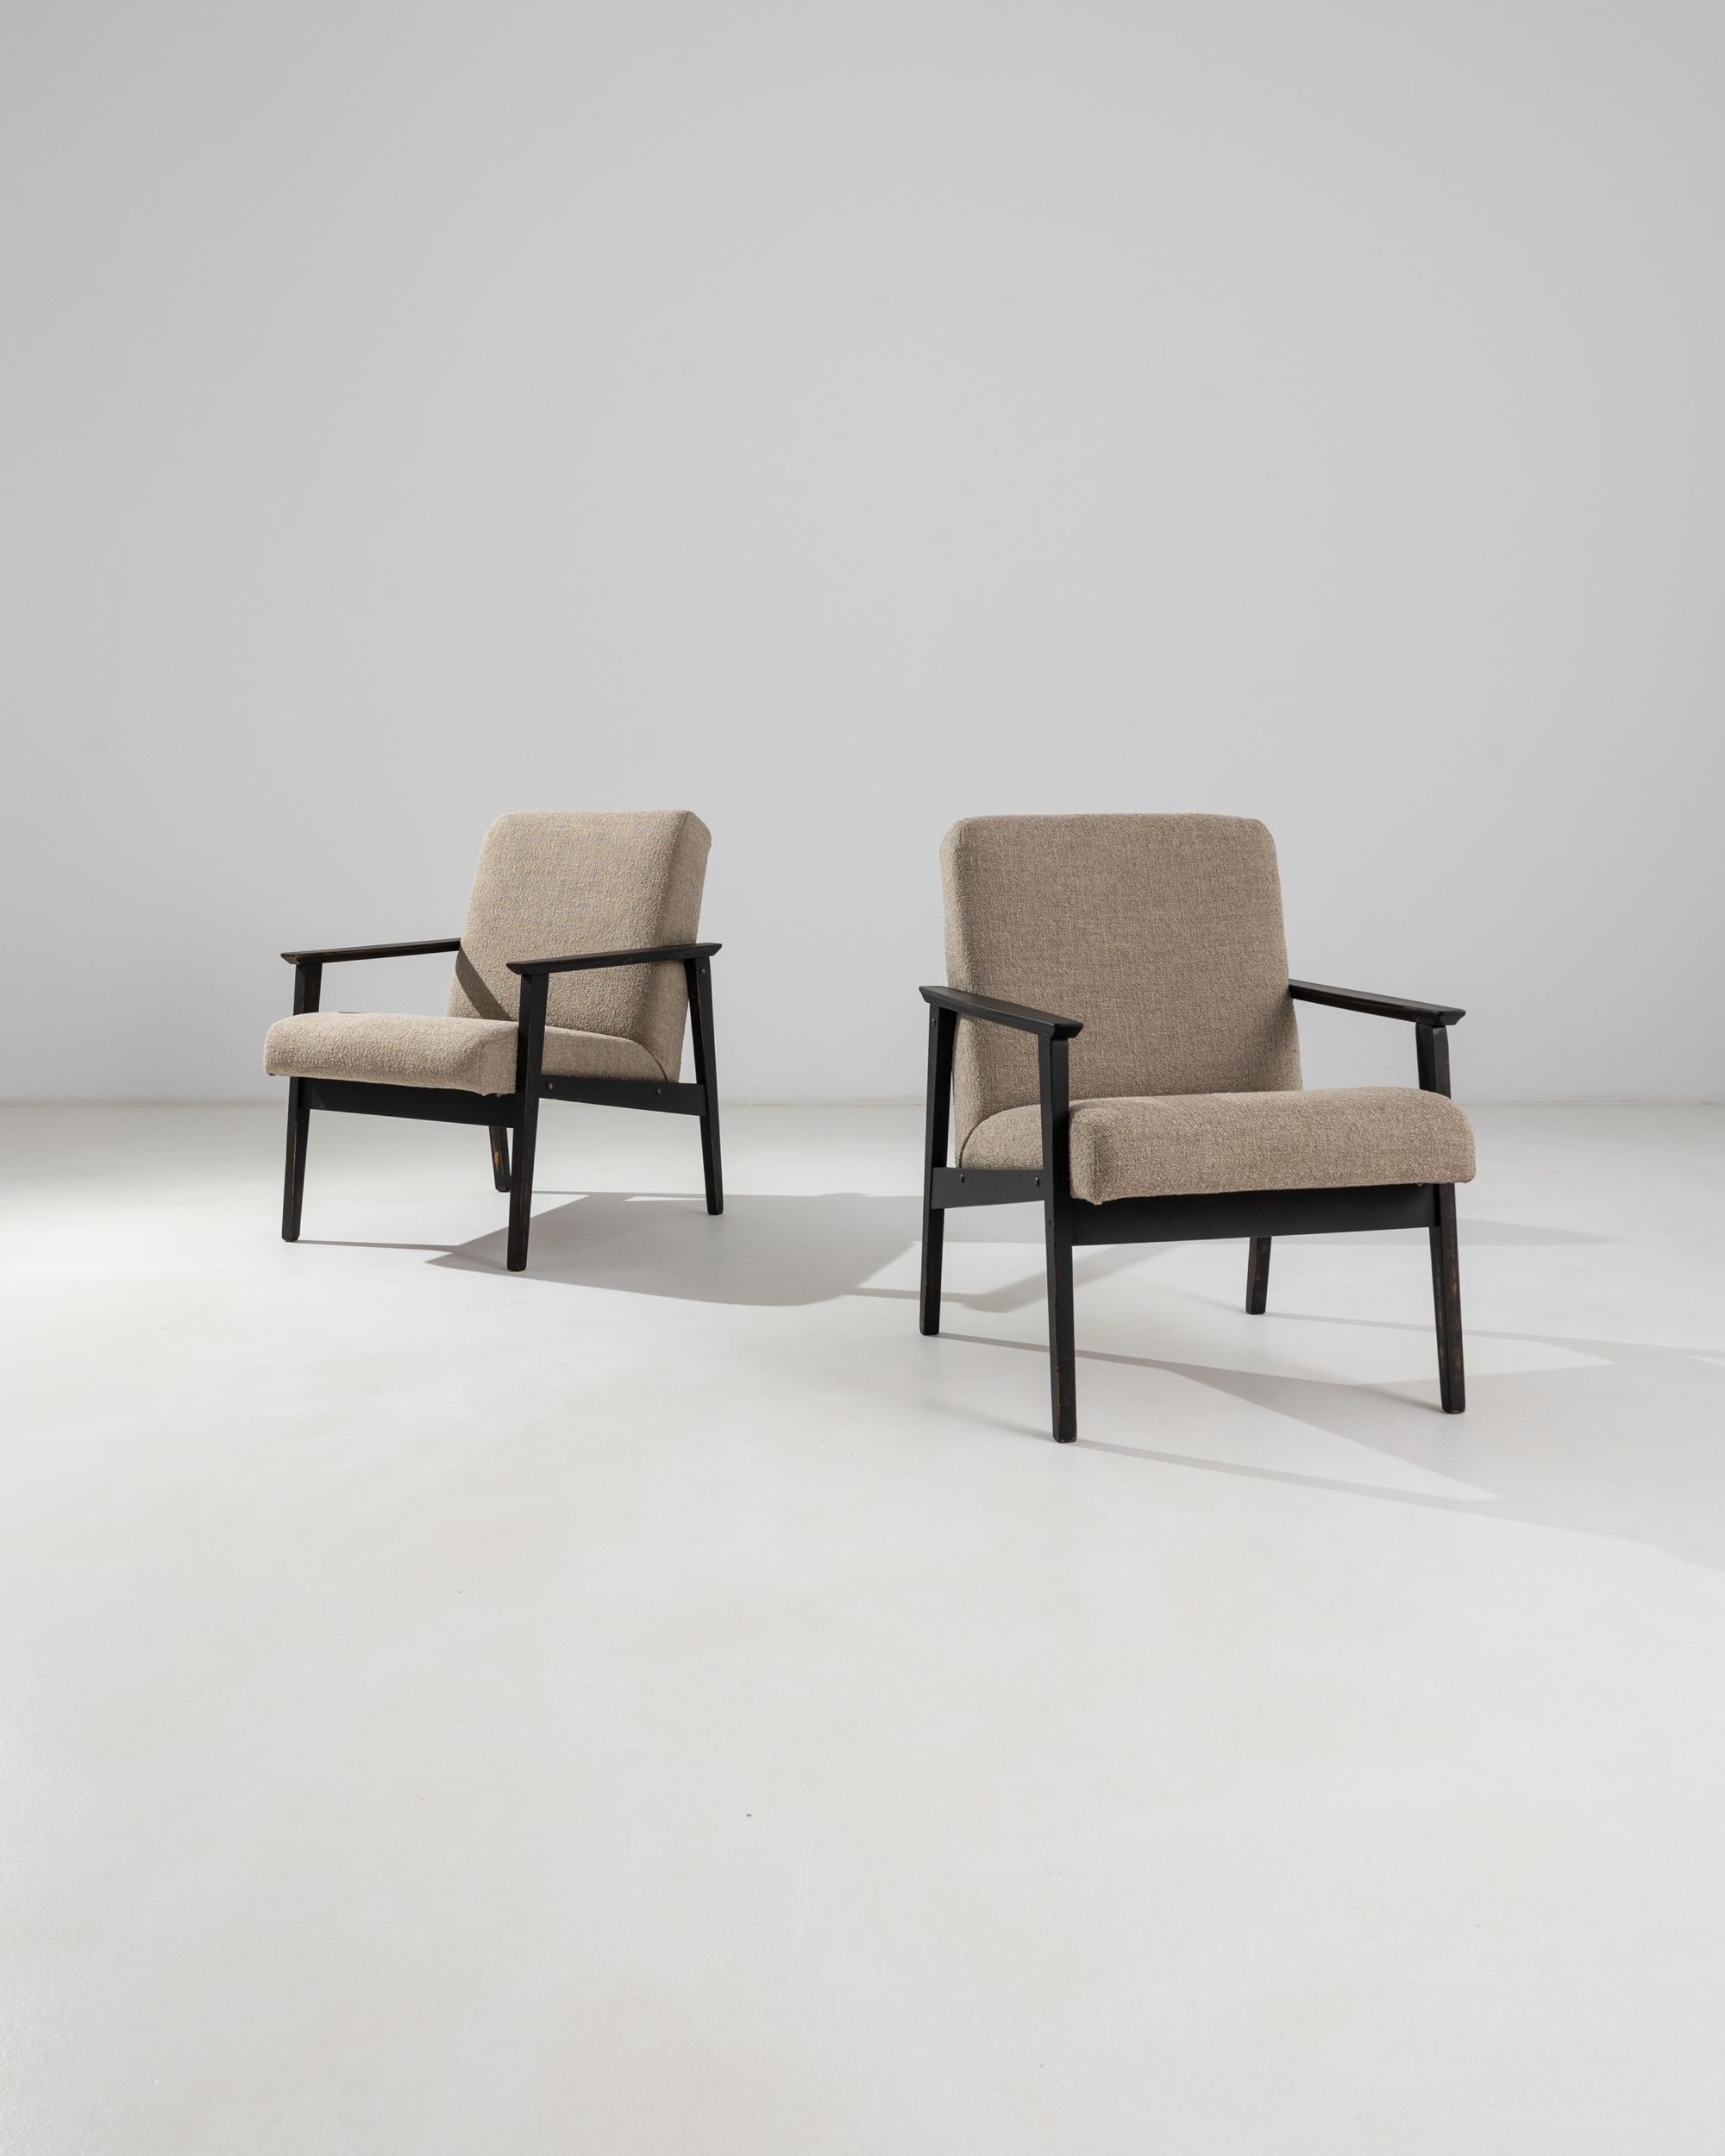 Cette paire de fauteuils rembourrés a été produite en République tchèque, vers 1960. Une paire de fauteuils sédentaires tapissés d'un doux tissu bouclé sable, avec un dossier légèrement incliné et une large assise pour une posture confortable.